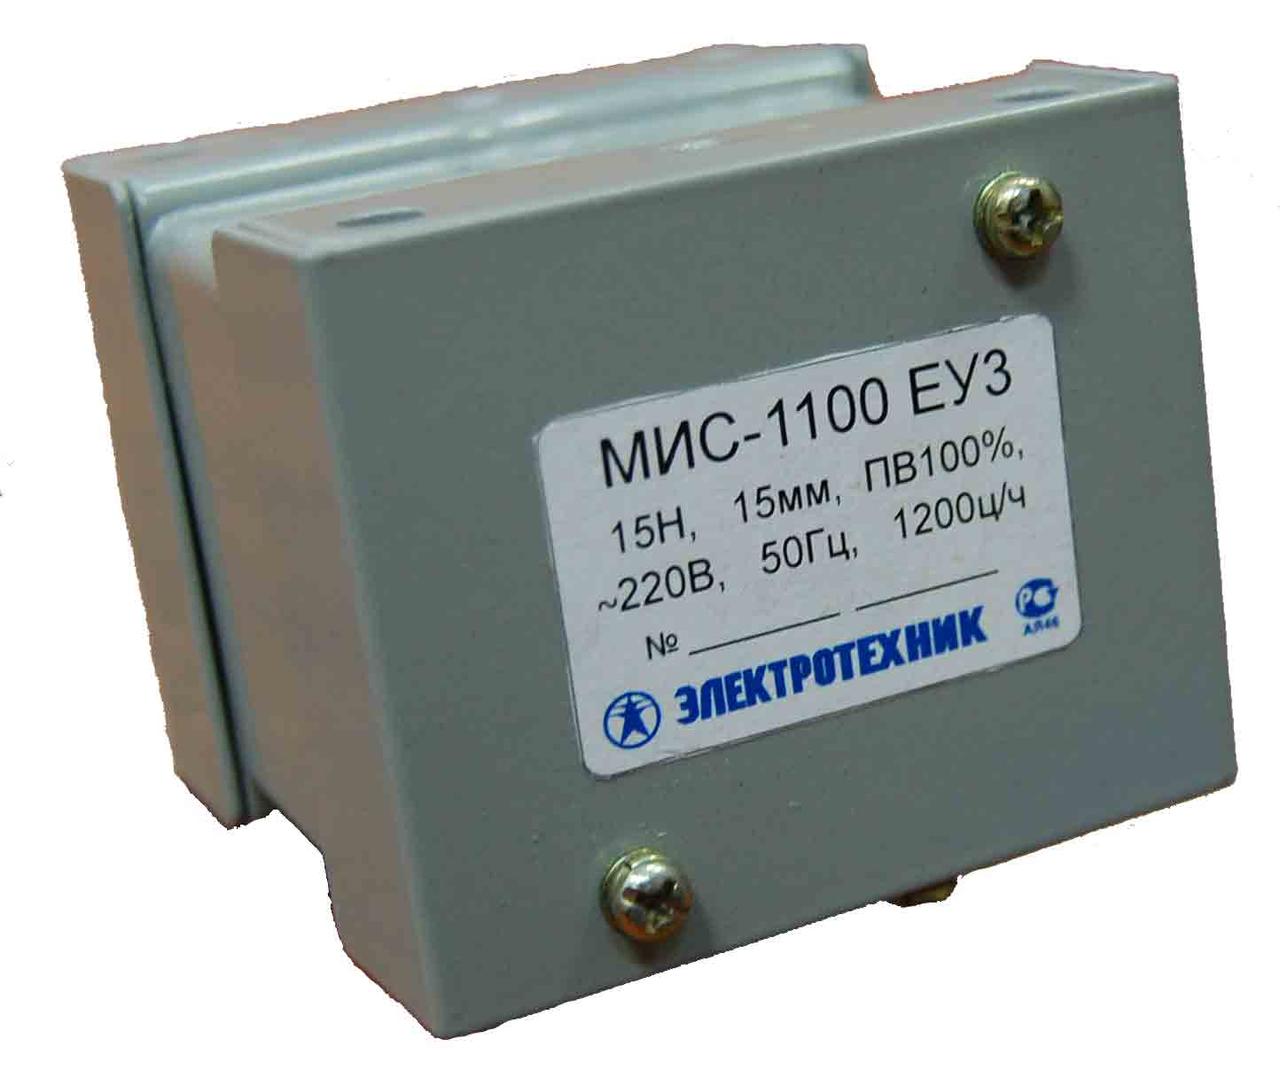 Электромагнит МИС-1100 ЕУ3, 220В, тянущее исполнение, ПВ 100%, IP20, с жесткими выводами, (ЭТ)